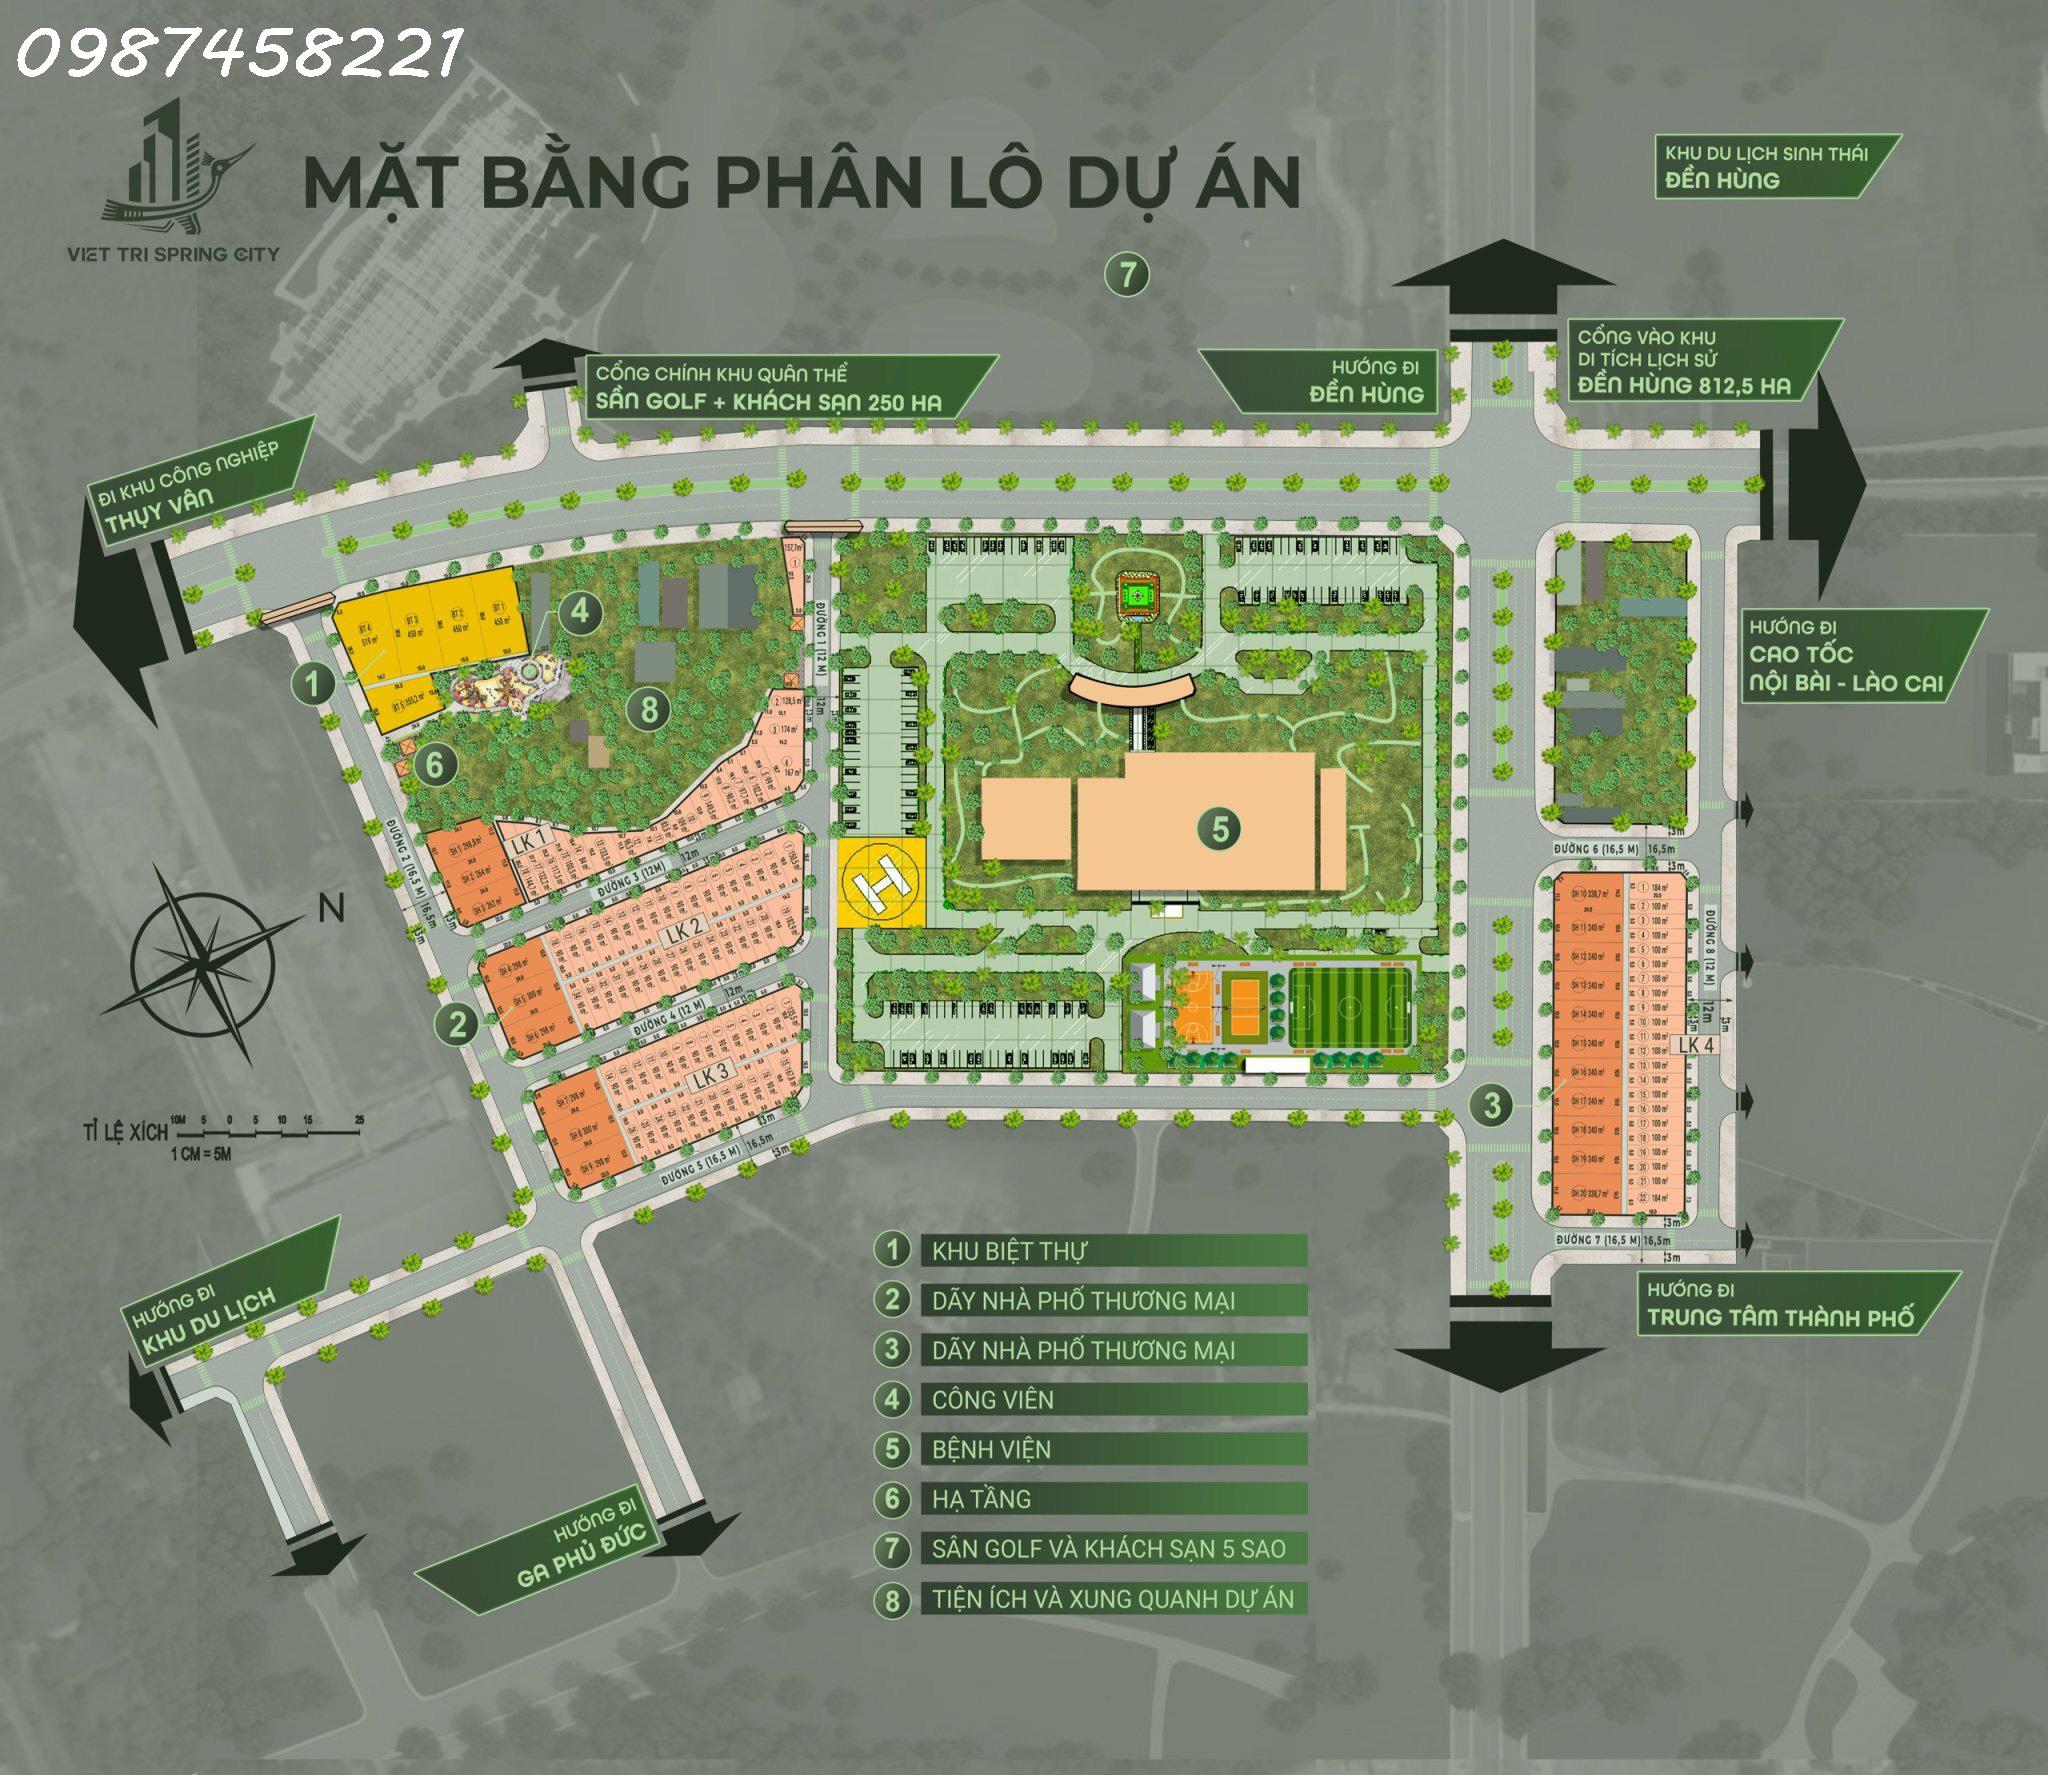 Cần thanh khoản gấp 5 lô đất KĐT Spring City Việt Trì - 90m2 giá đầu tư cực kỳ hấp dẫn - Ảnh 2